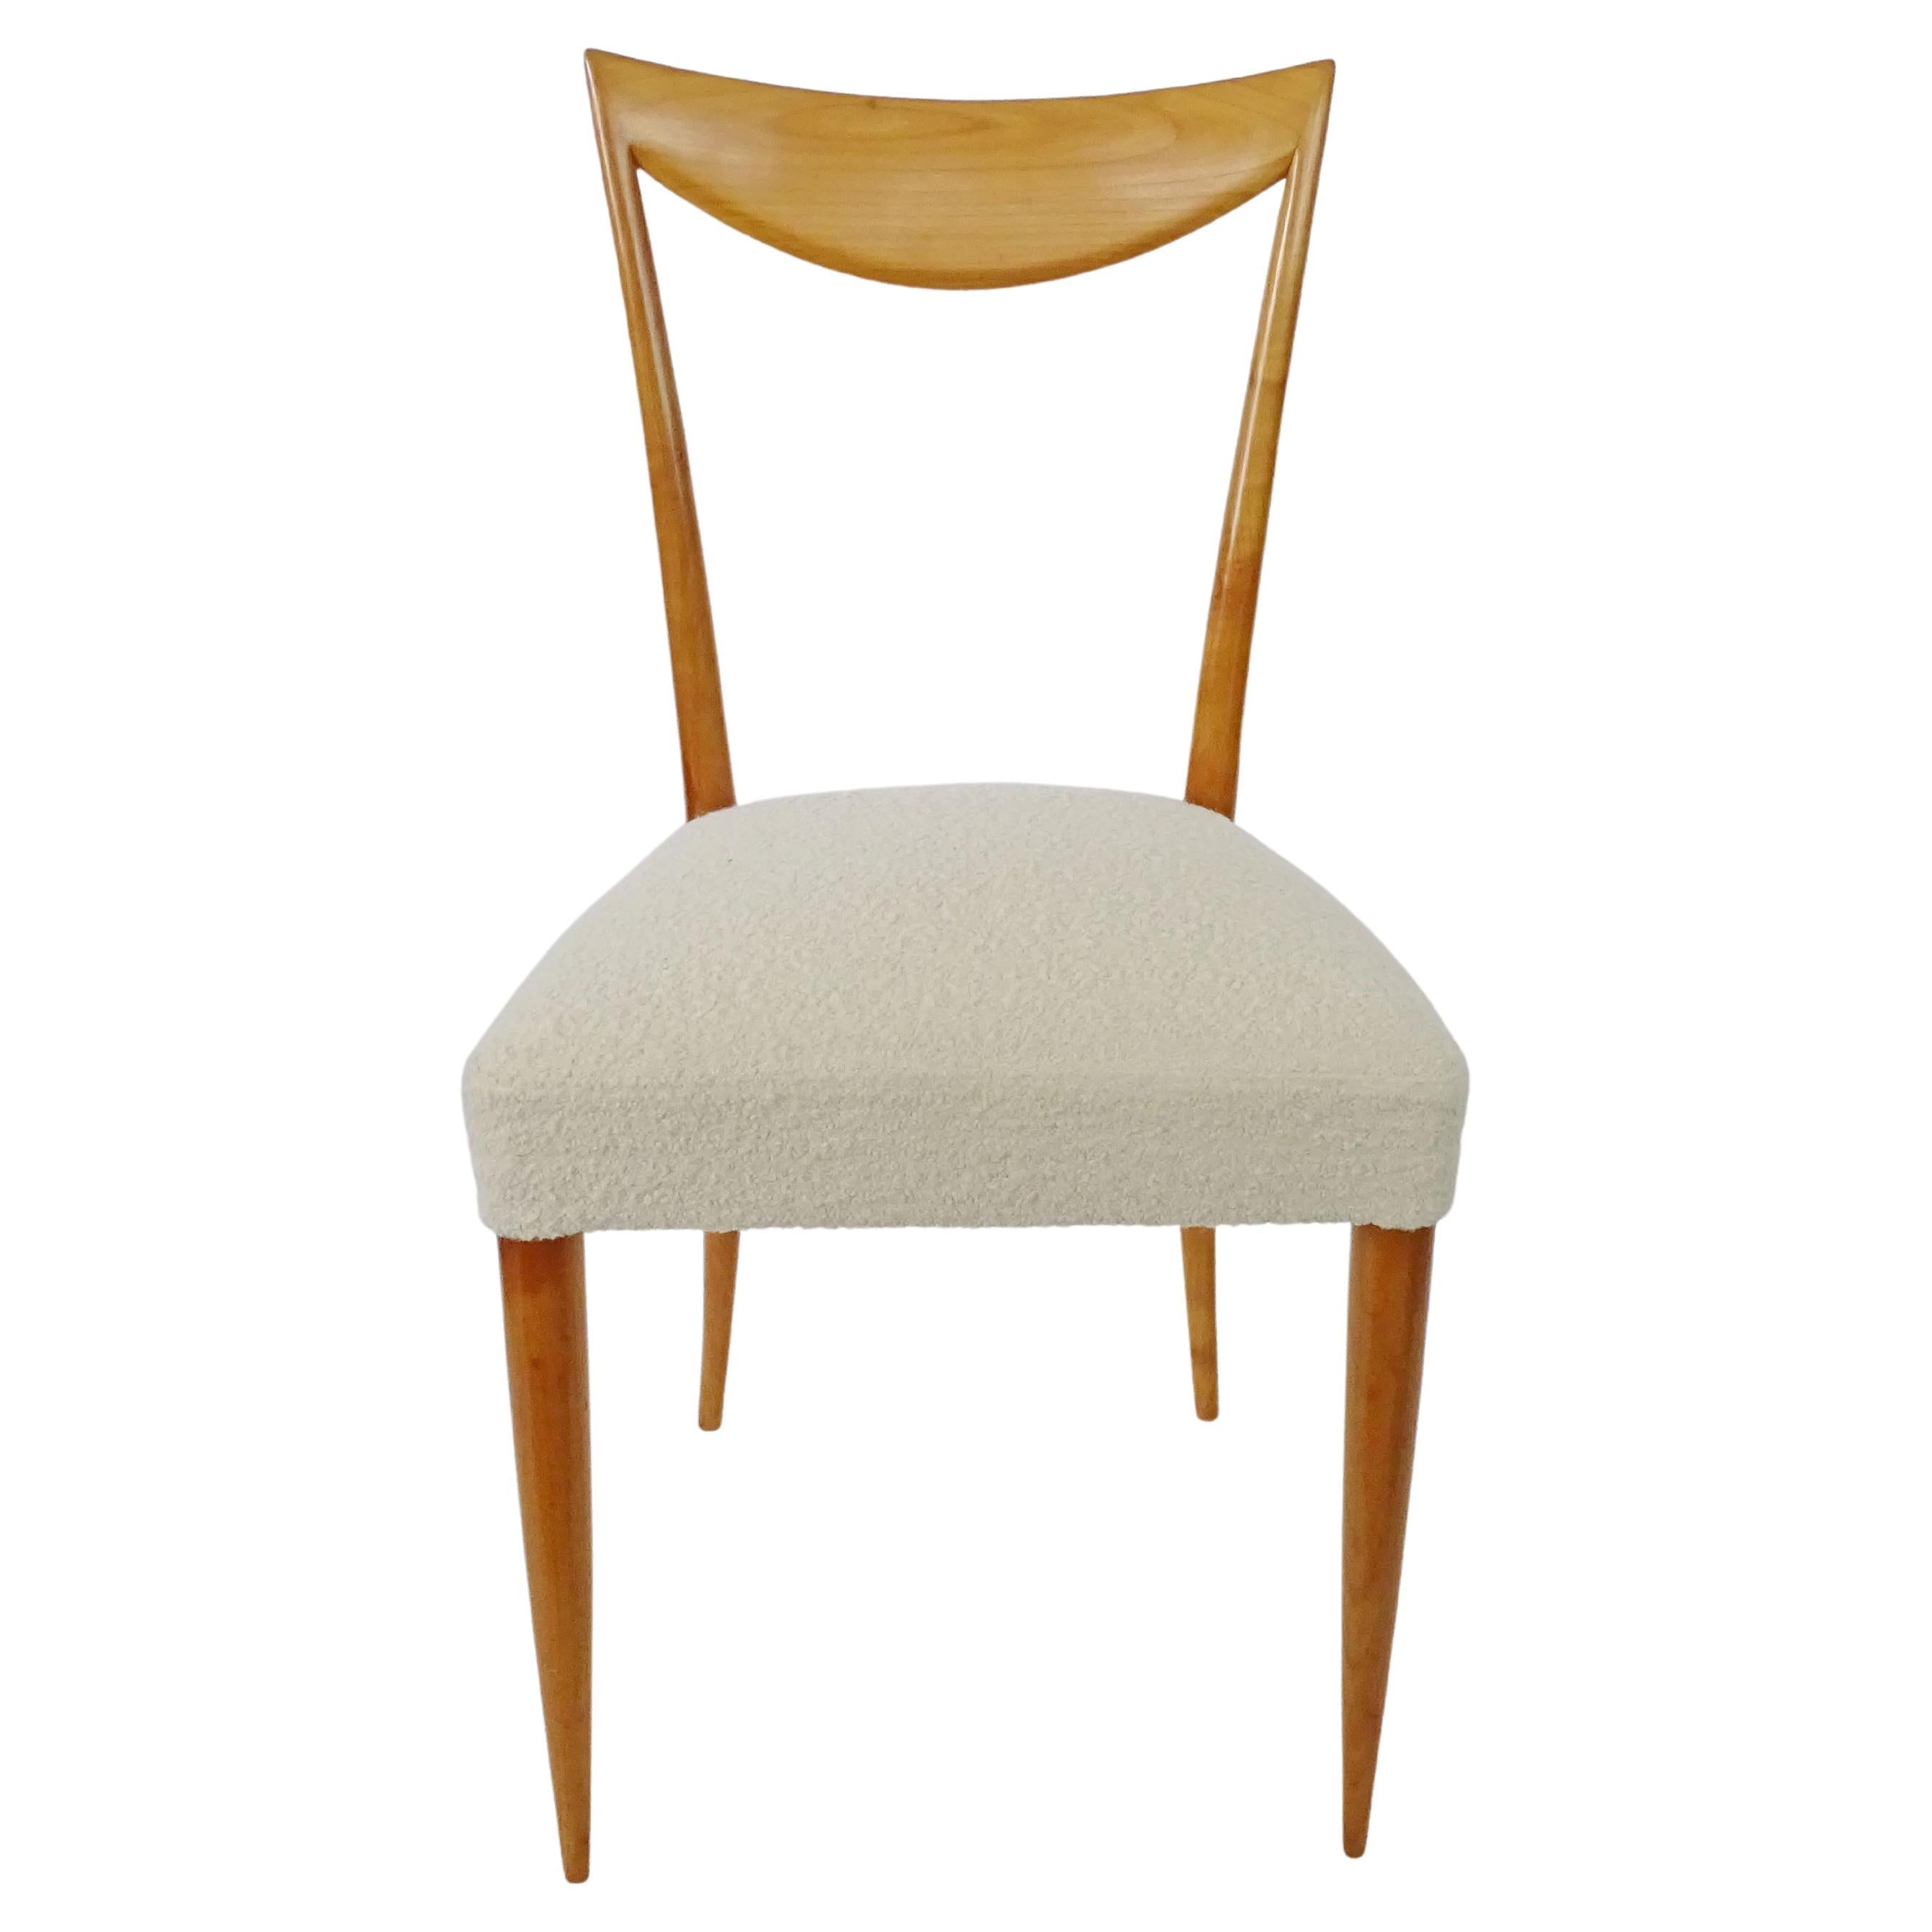 Italian 1950s Sculptural Single Chair